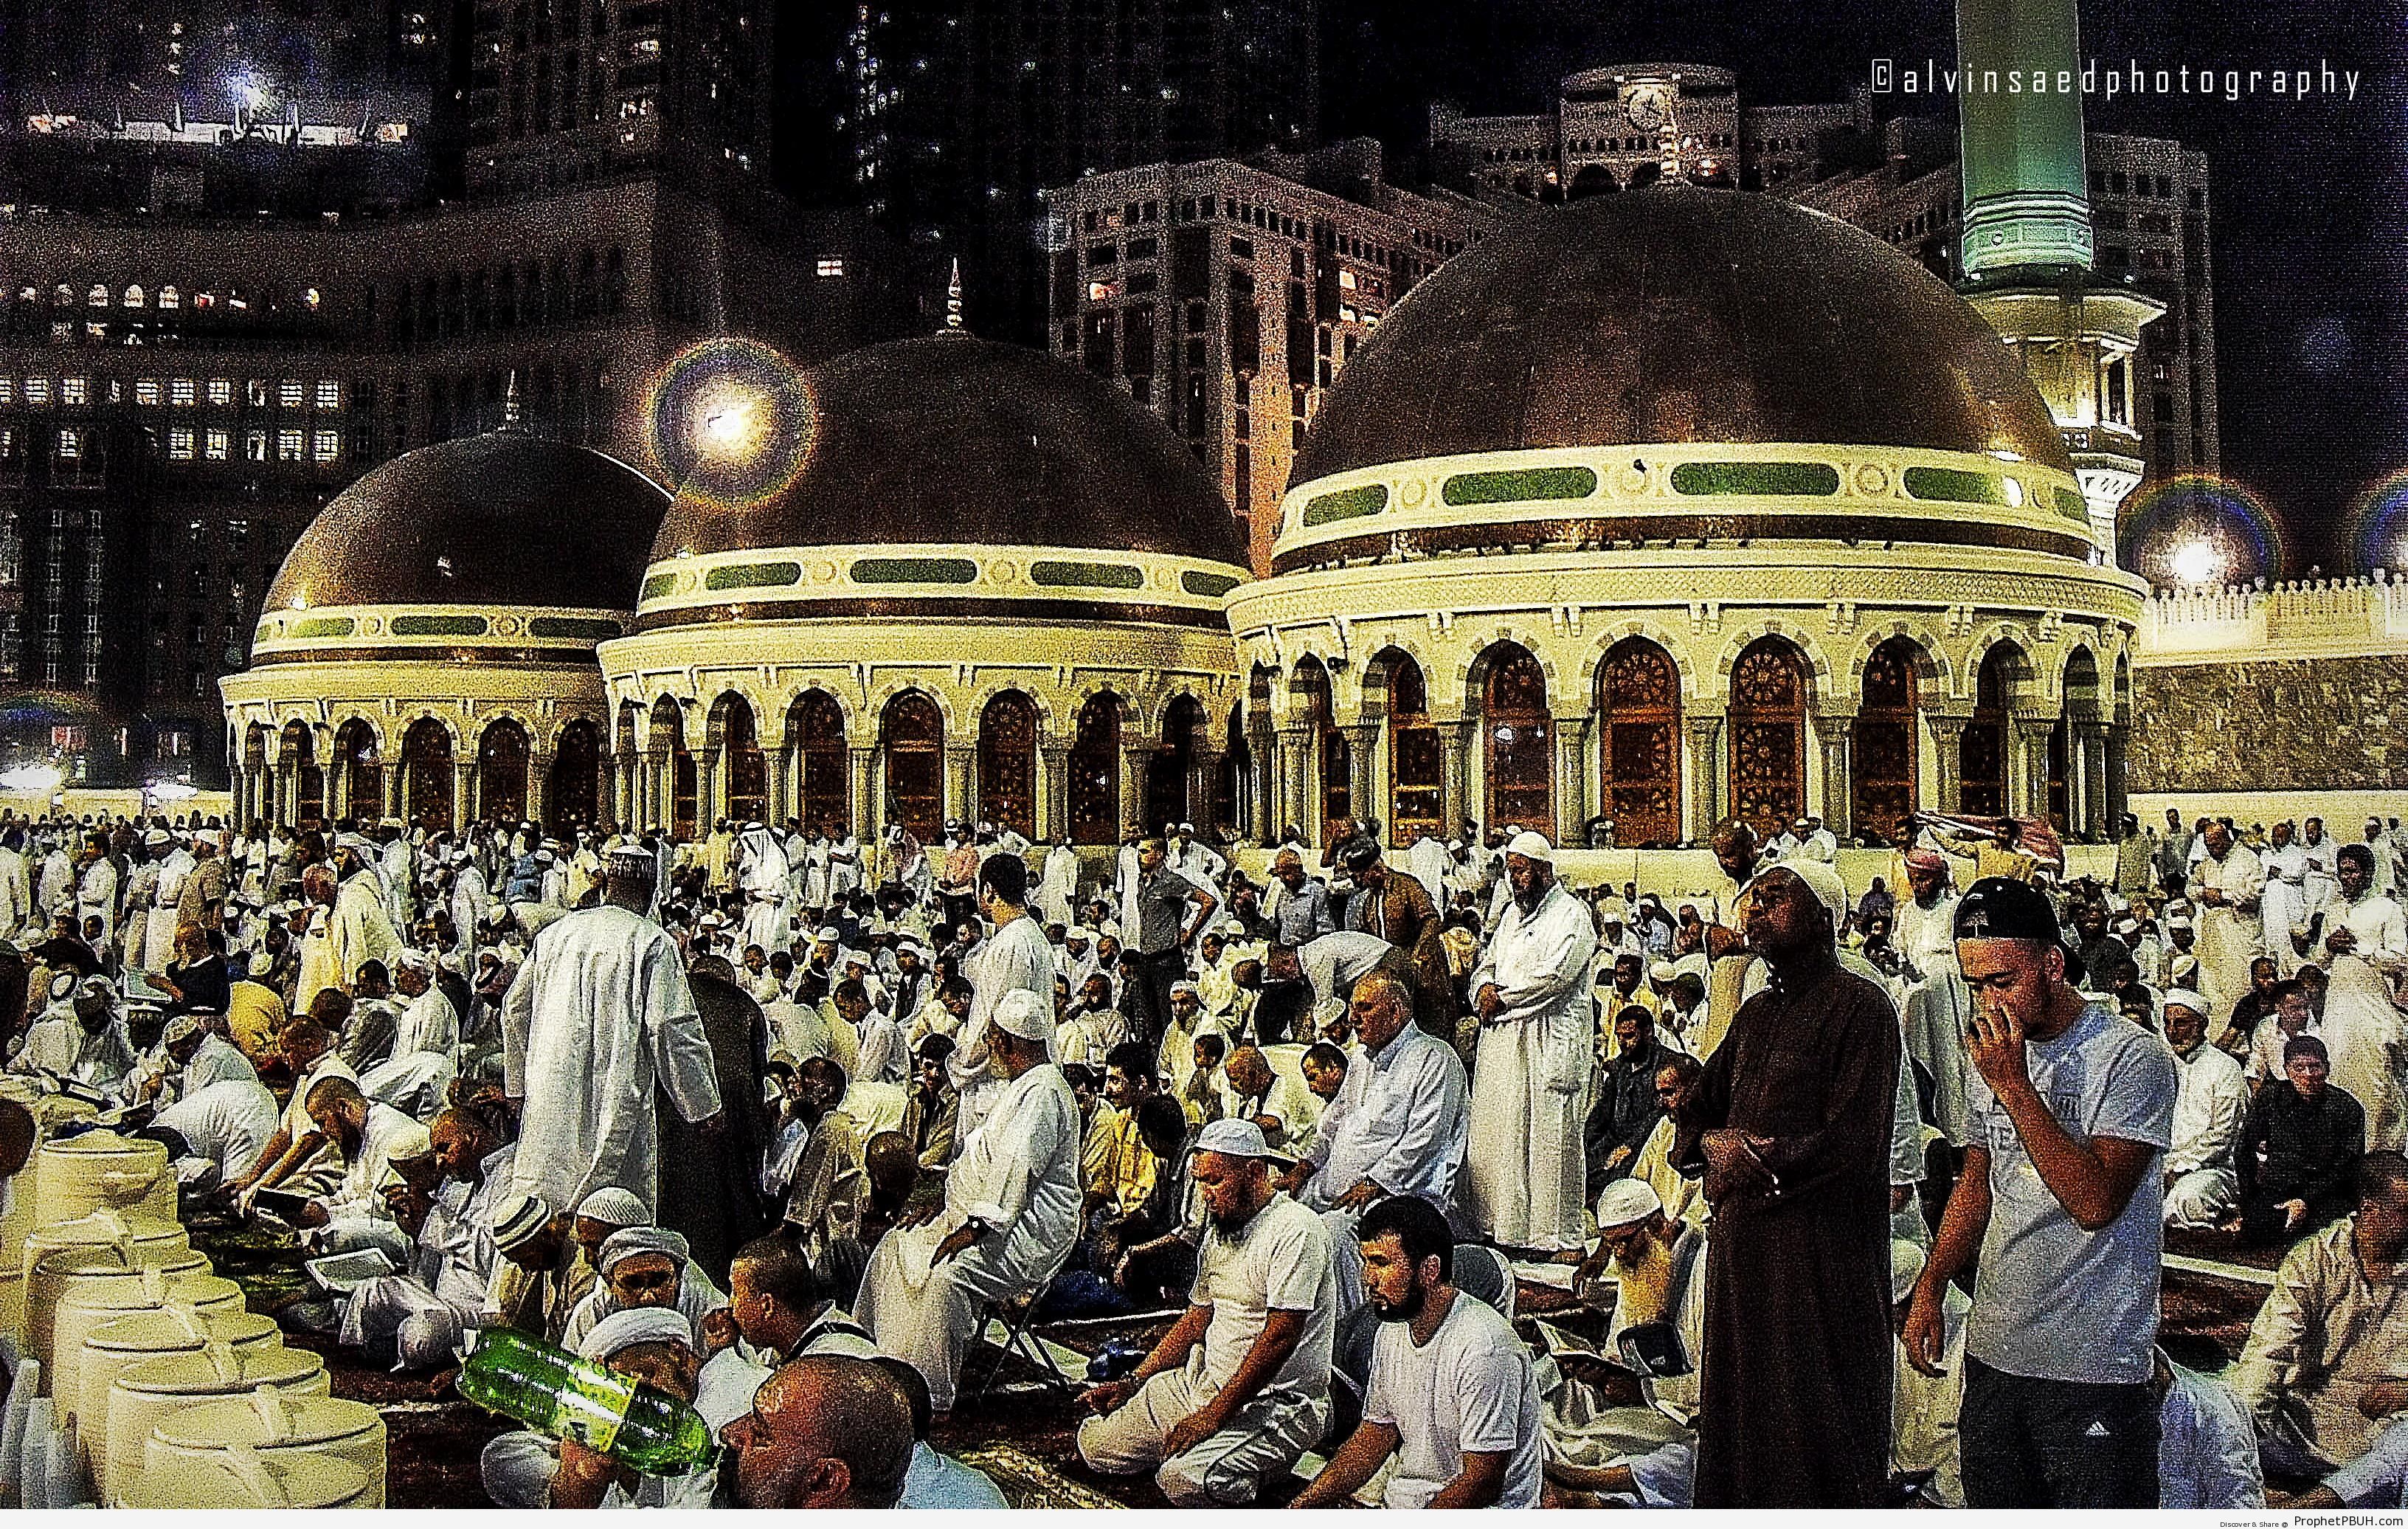 Makkah Clock Tower – Makkah (Mecca), Saudi Arabia | Prophet PBUH (Peace